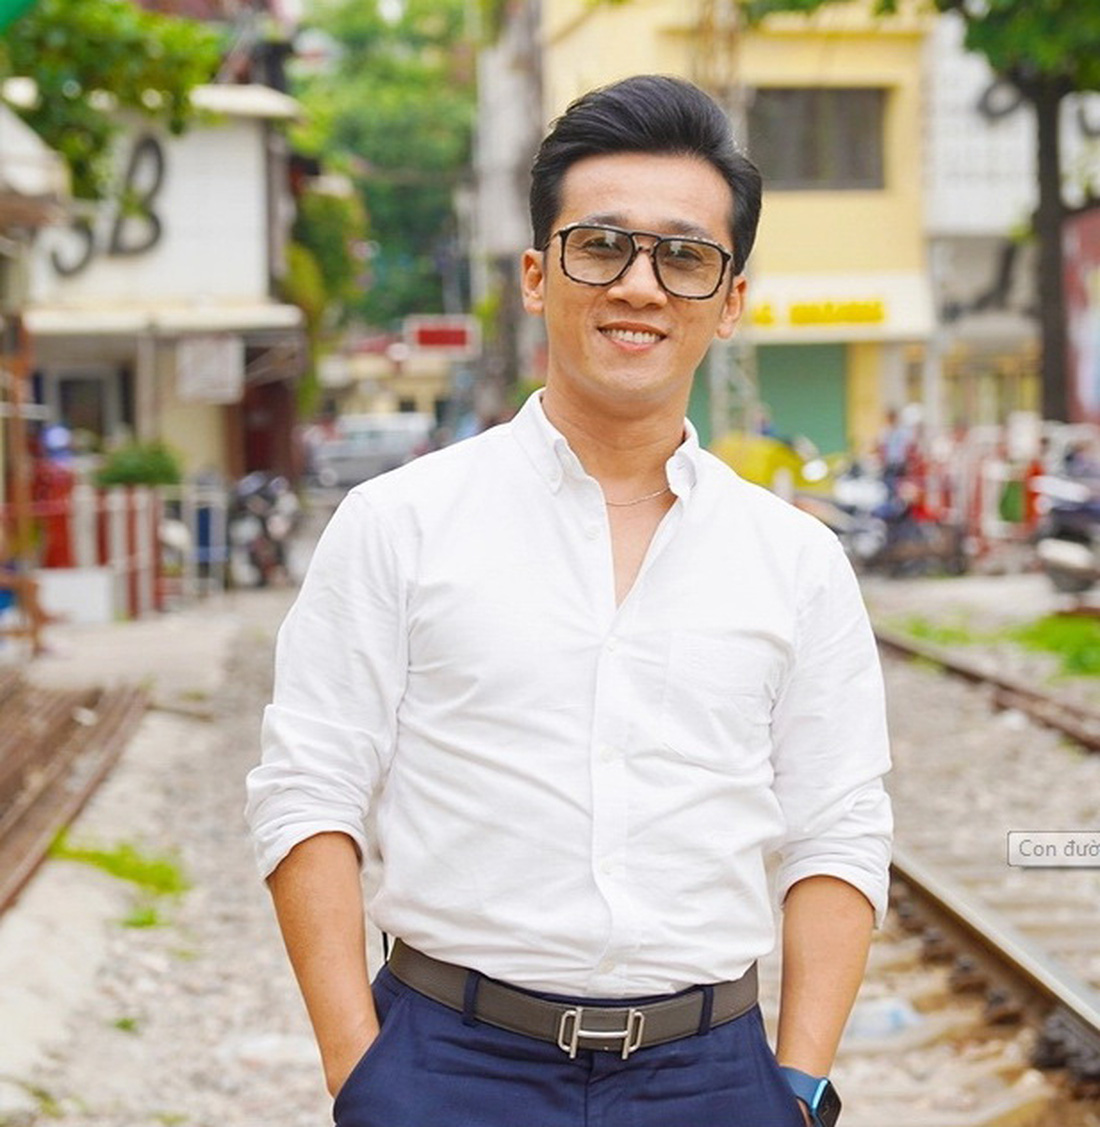 Ca sĩ Quang Hào là nhân vật chính trong Con đường âm nhạc - Ảnh: VTV